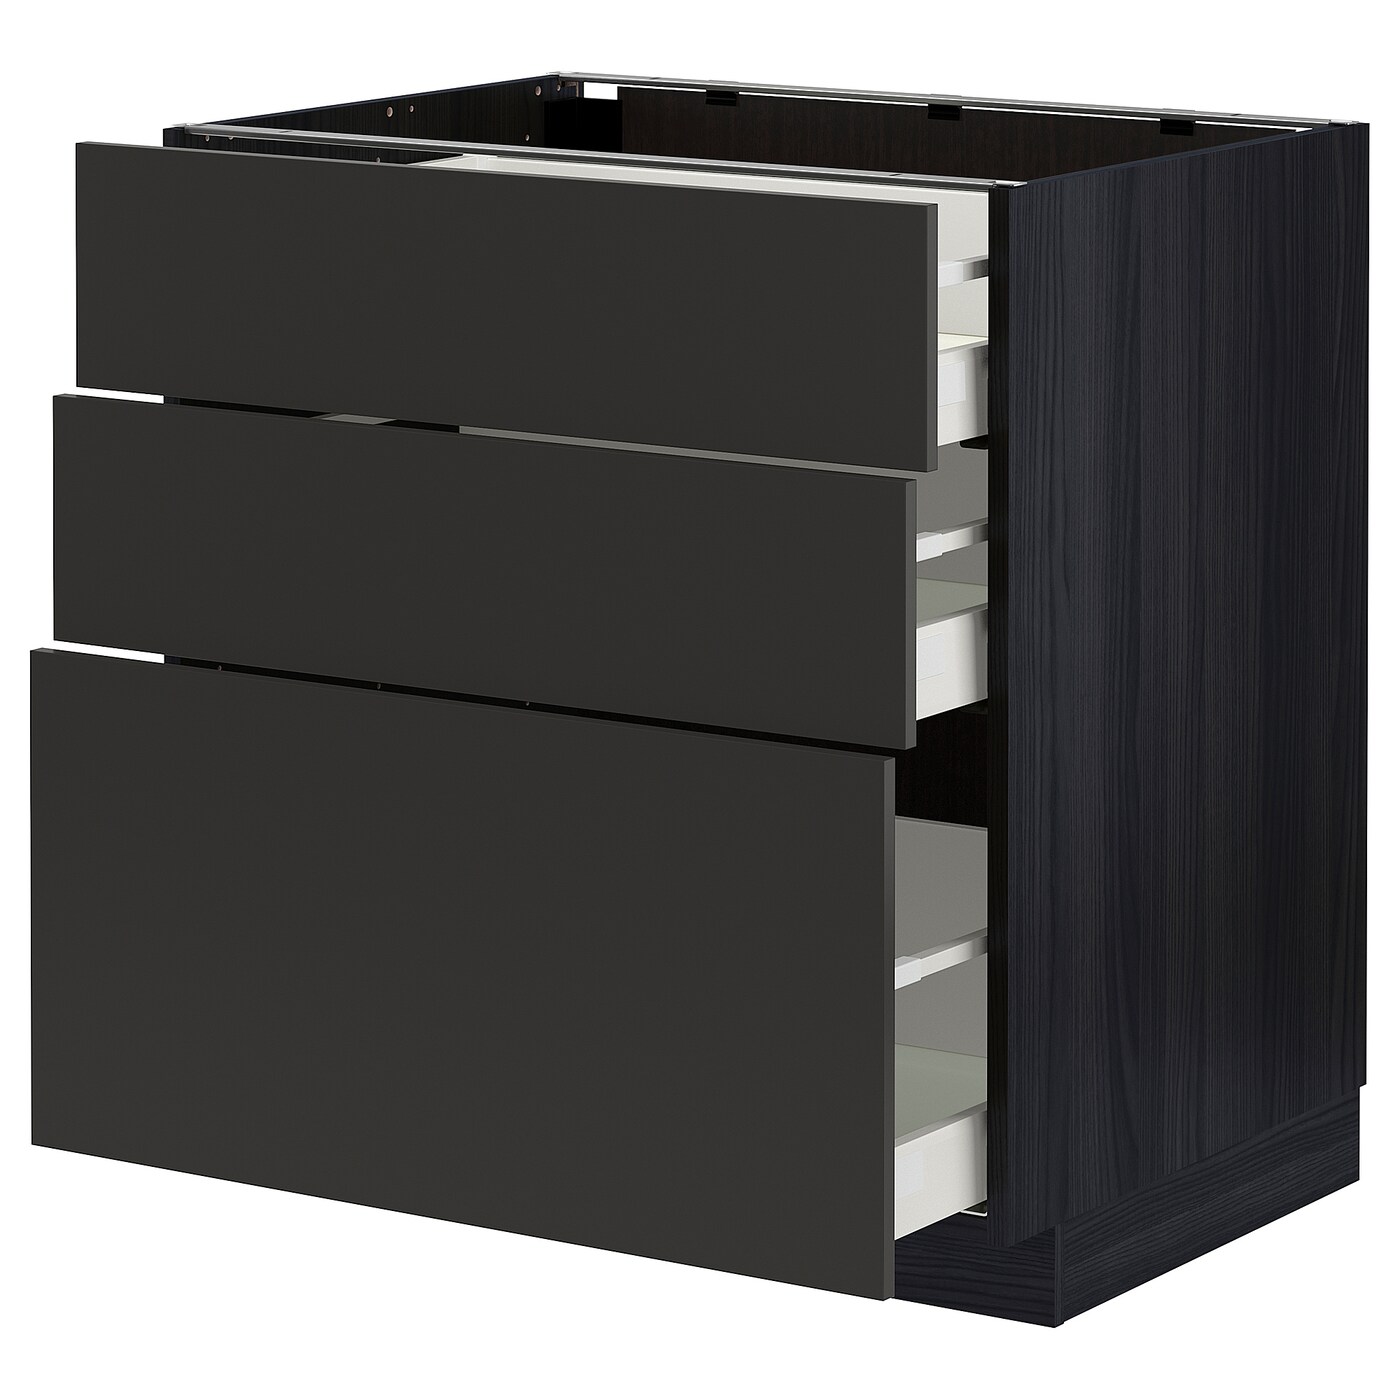 Напольный кухонный шкаф  - IKEA METOD MAXIMERA, 88x62x80см, черный/темно-серый, МЕТОД МАКСИМЕРА ИКЕА